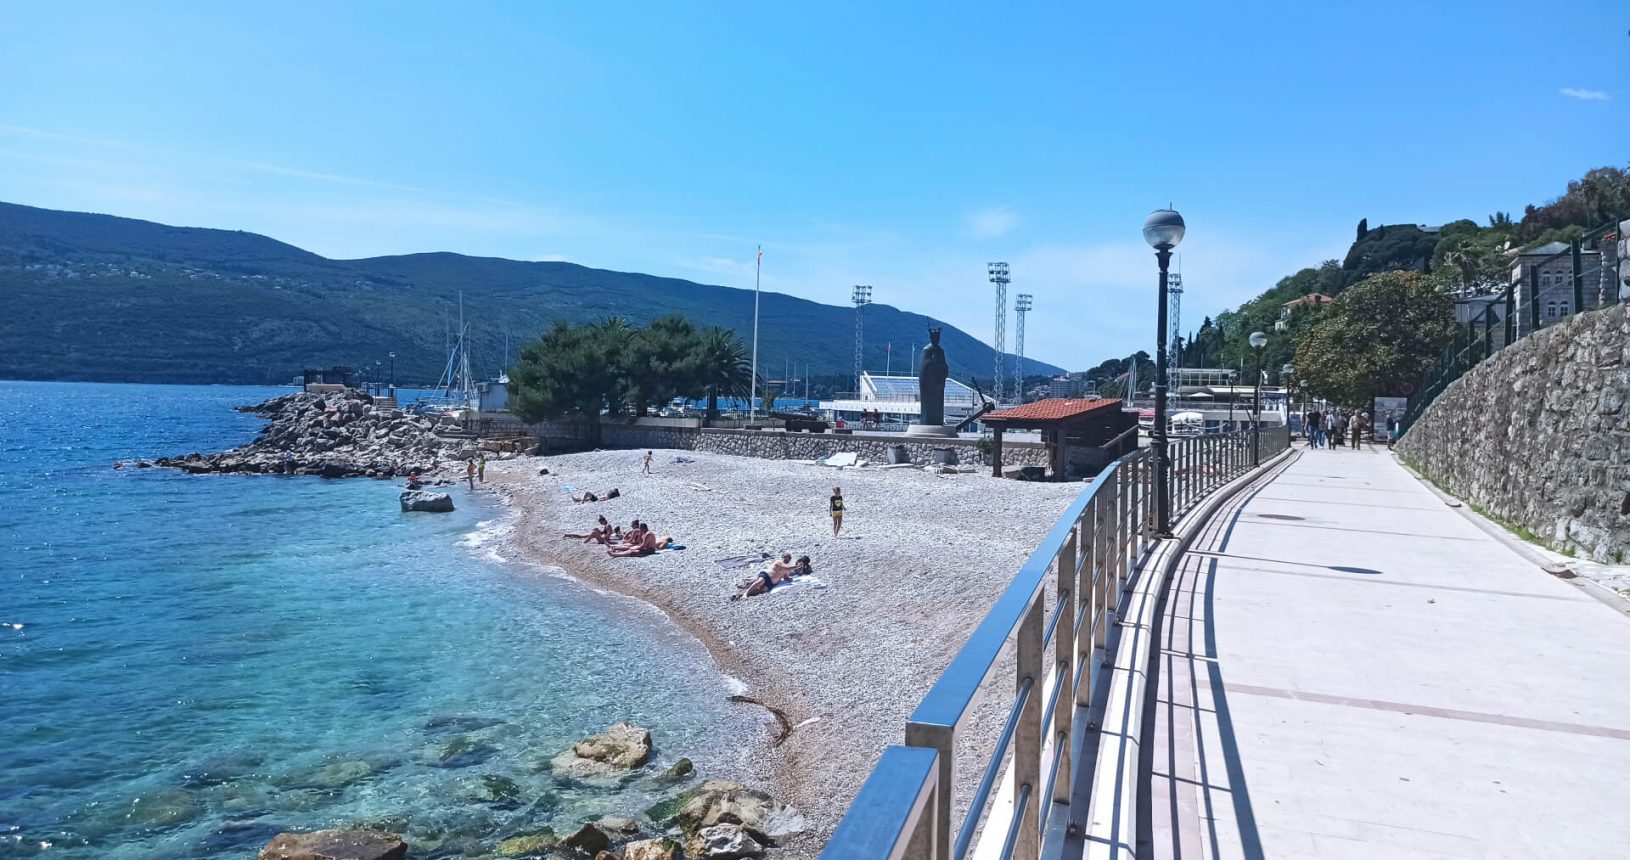 The view from promenade to Herceg Novi and Herceg Novi Beach